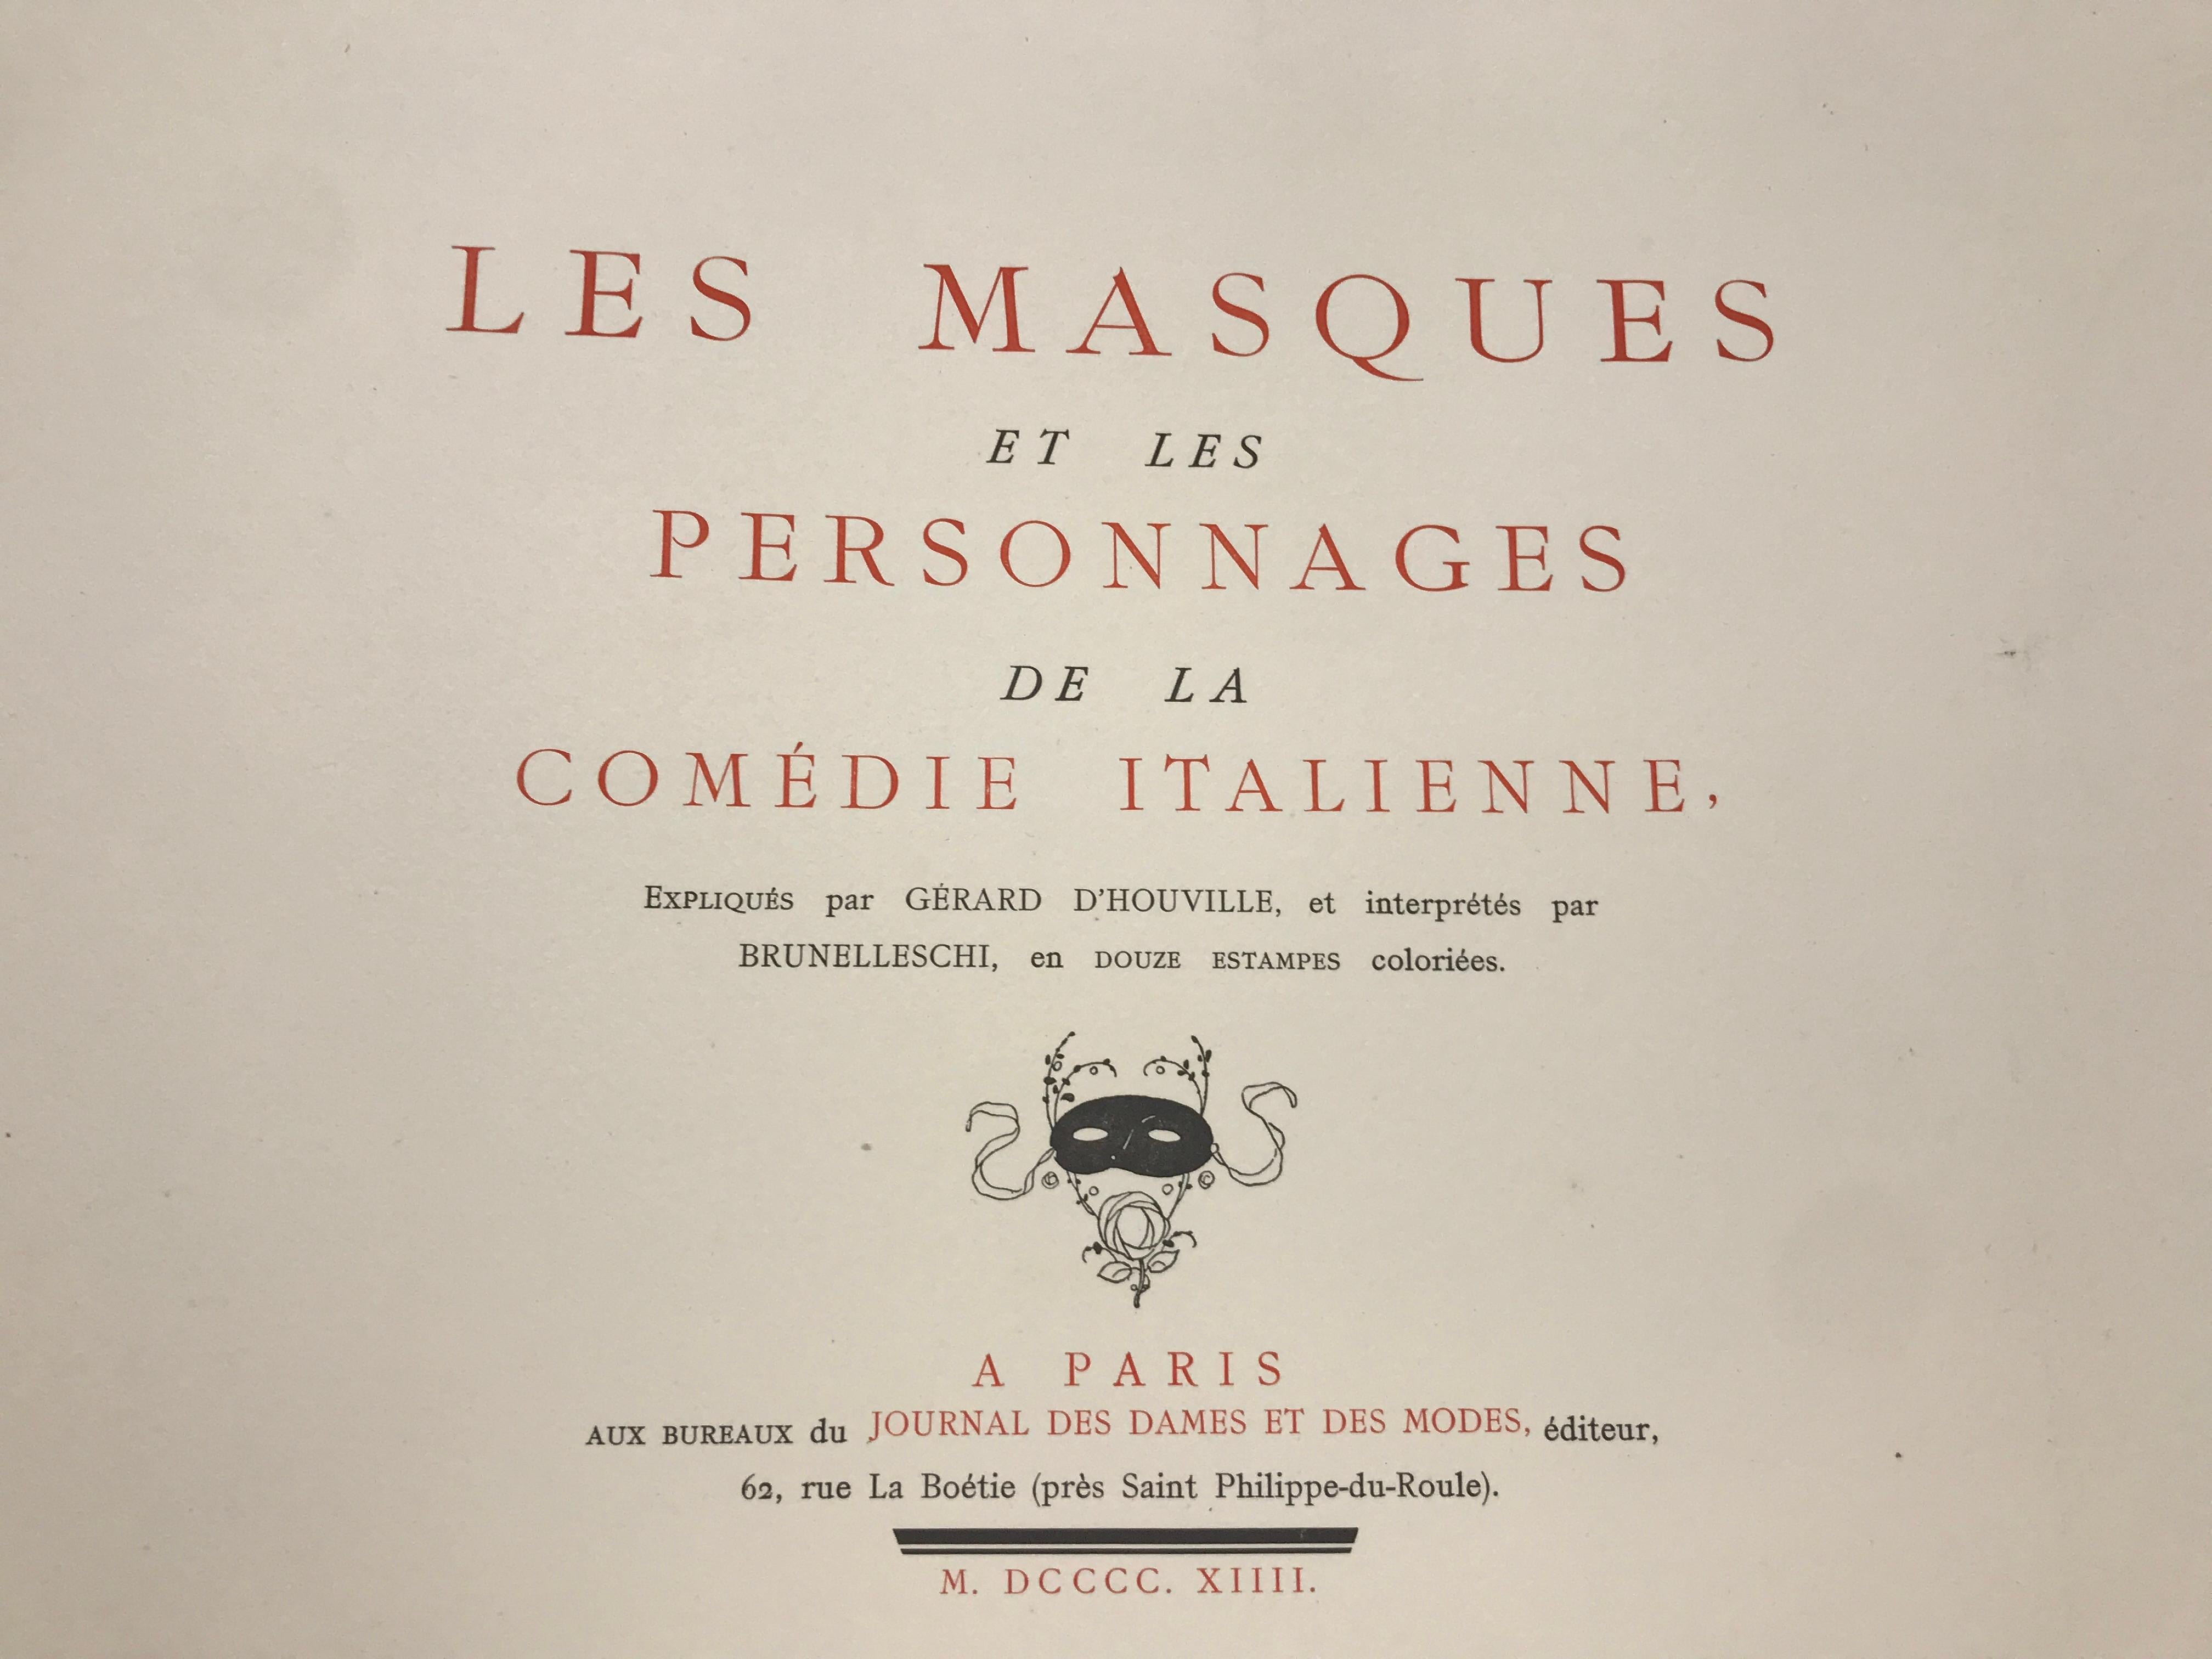 Les Masques et les Personnages de la Comedie Italienne - Art Deco Print by Umberto Brunelleschi